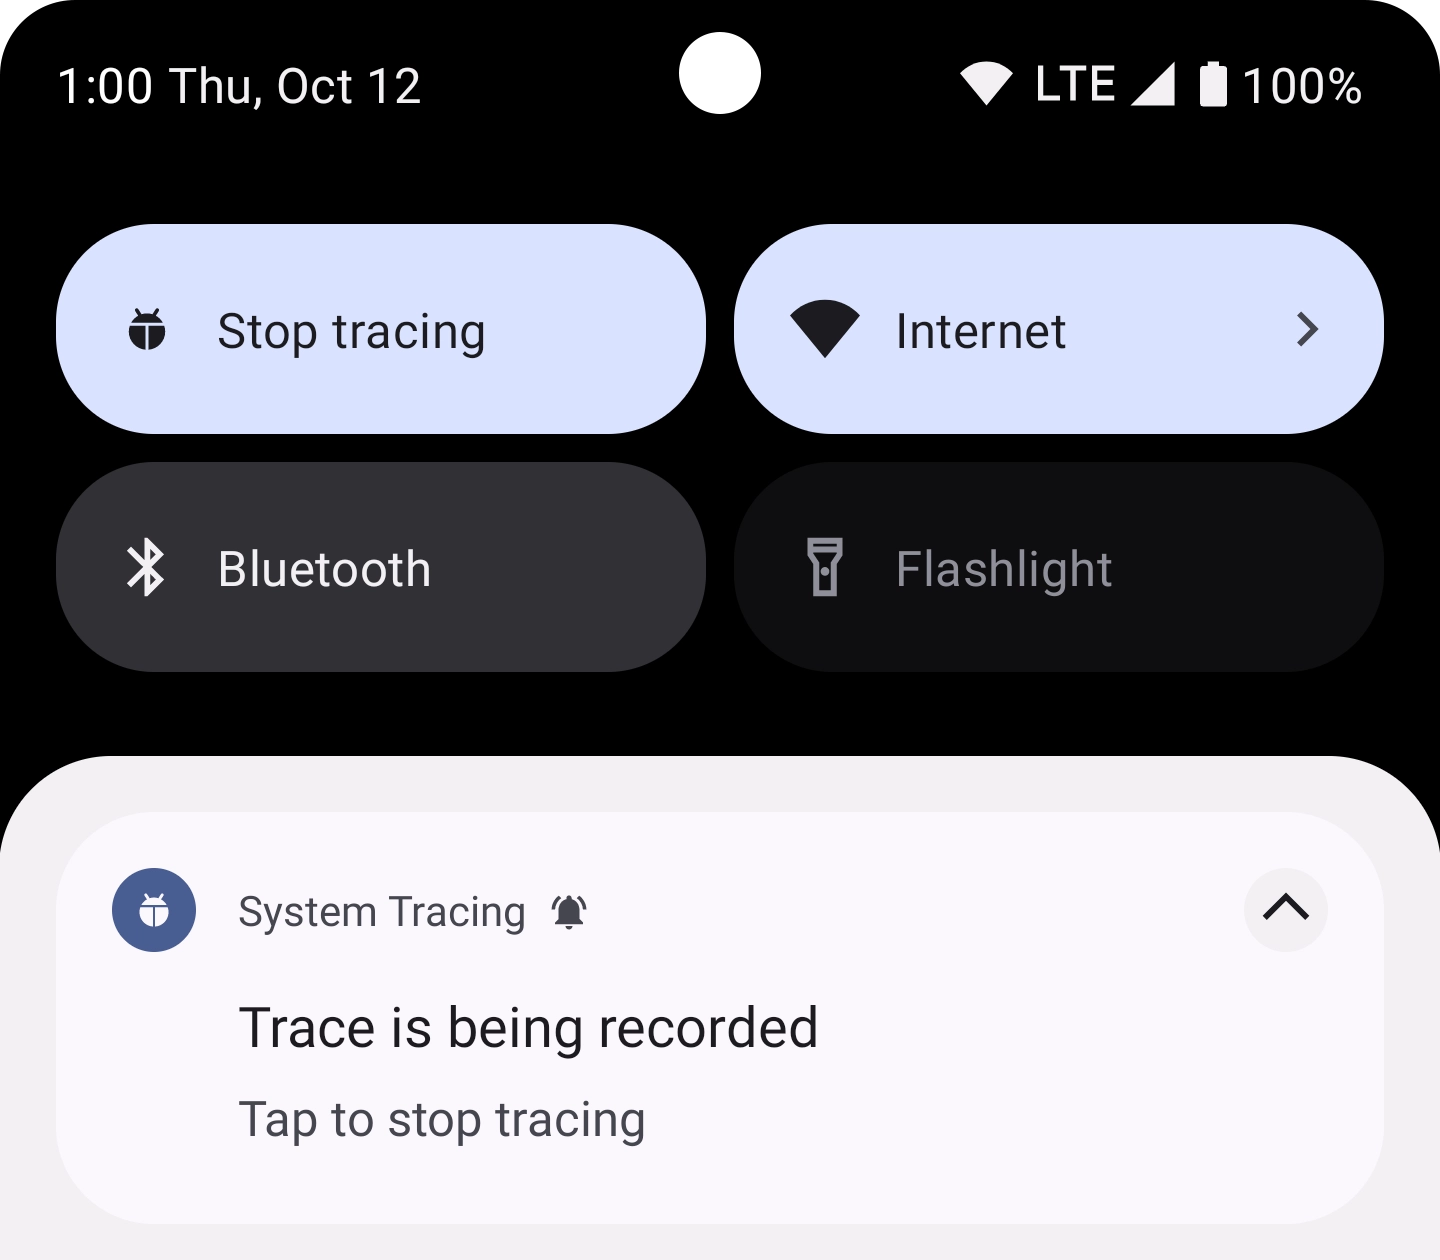 包含消息“Trace is being recorded. Tap to stop tracing.”的通知。